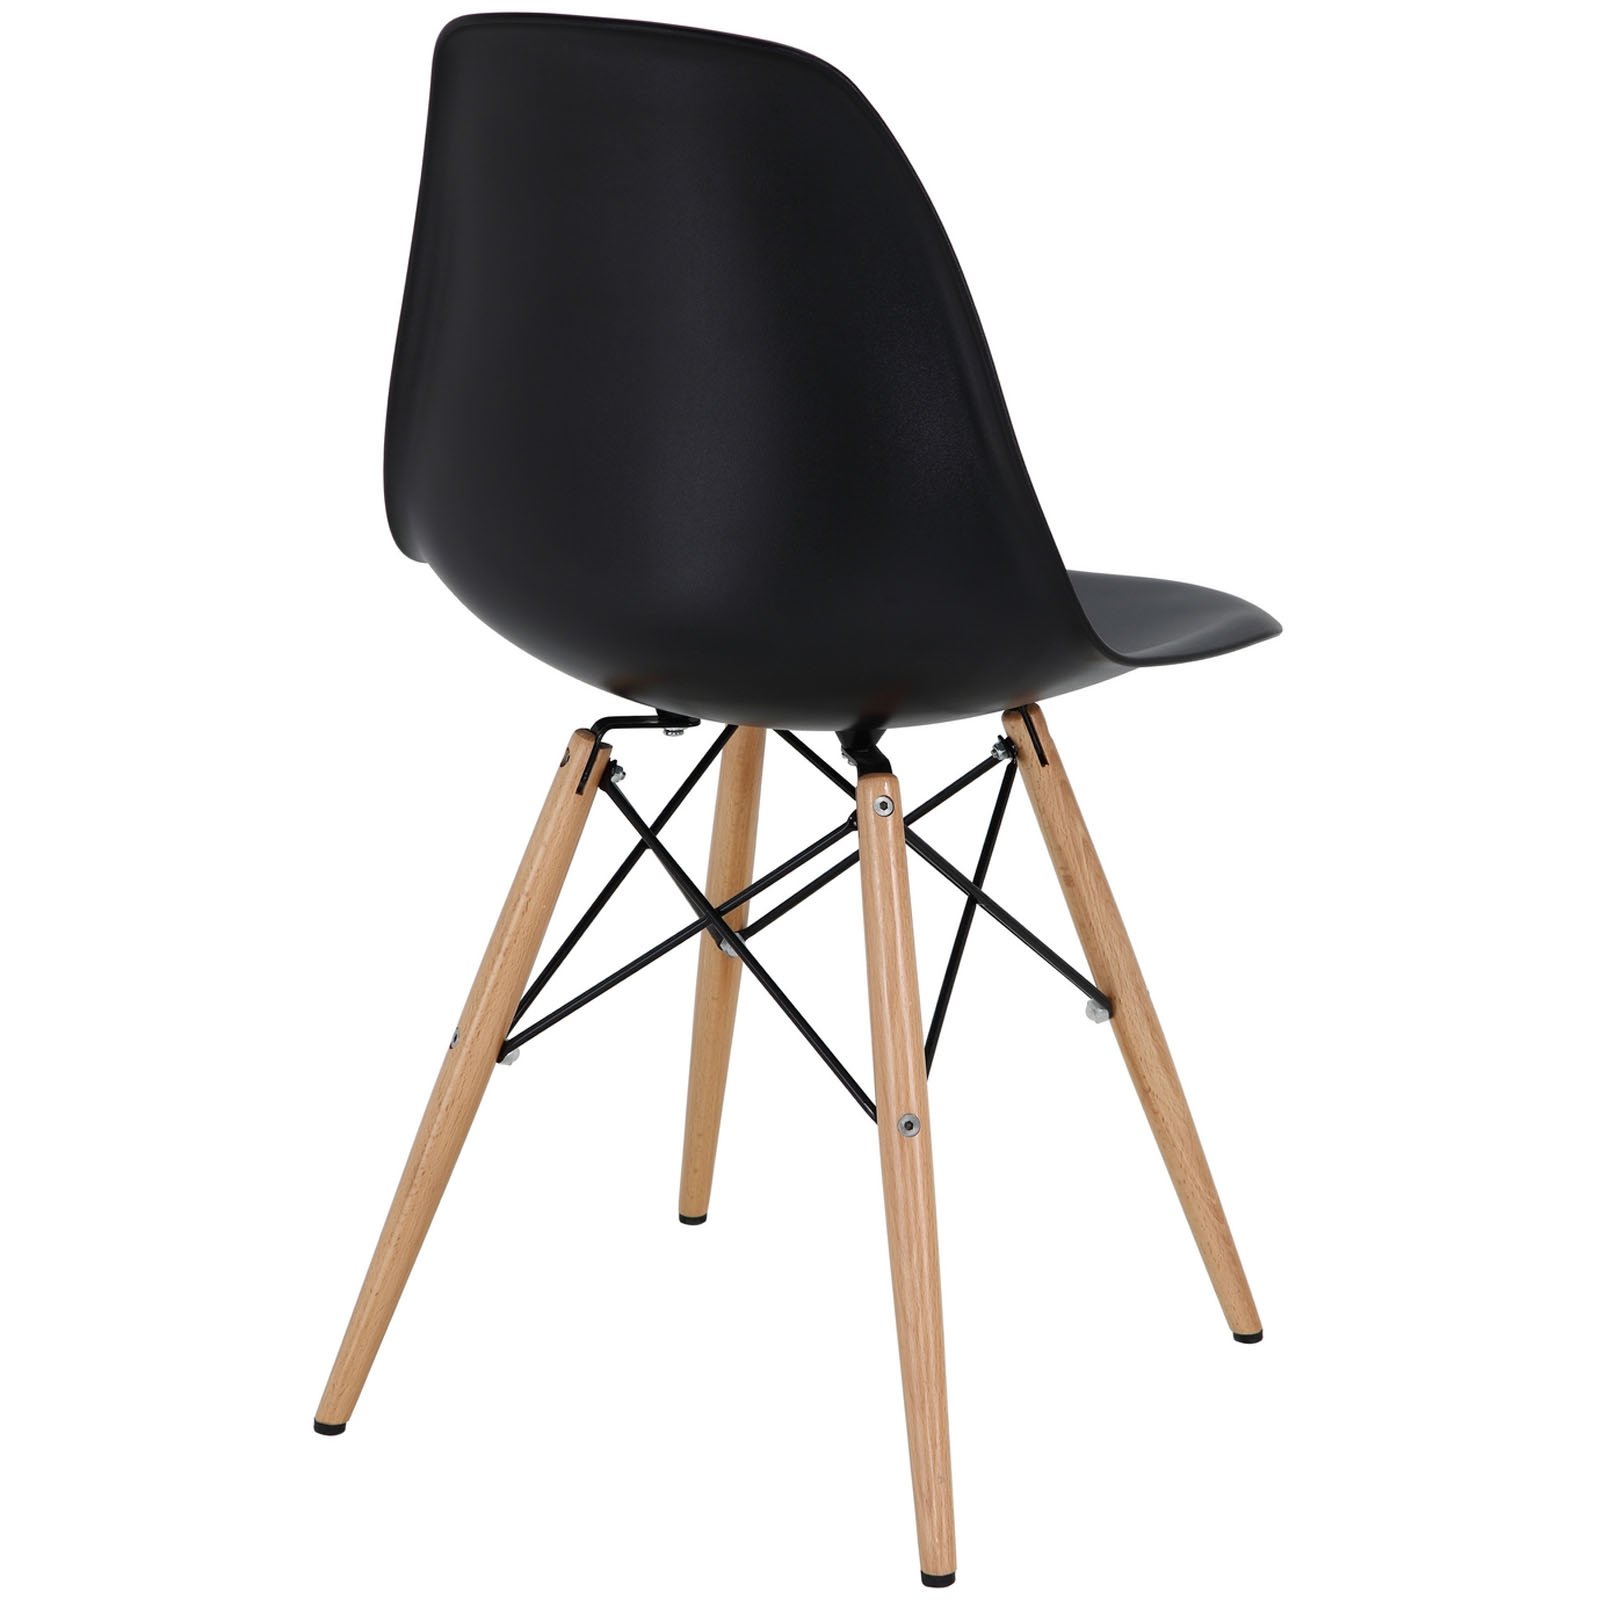 easy plastic shell chair - dowel base